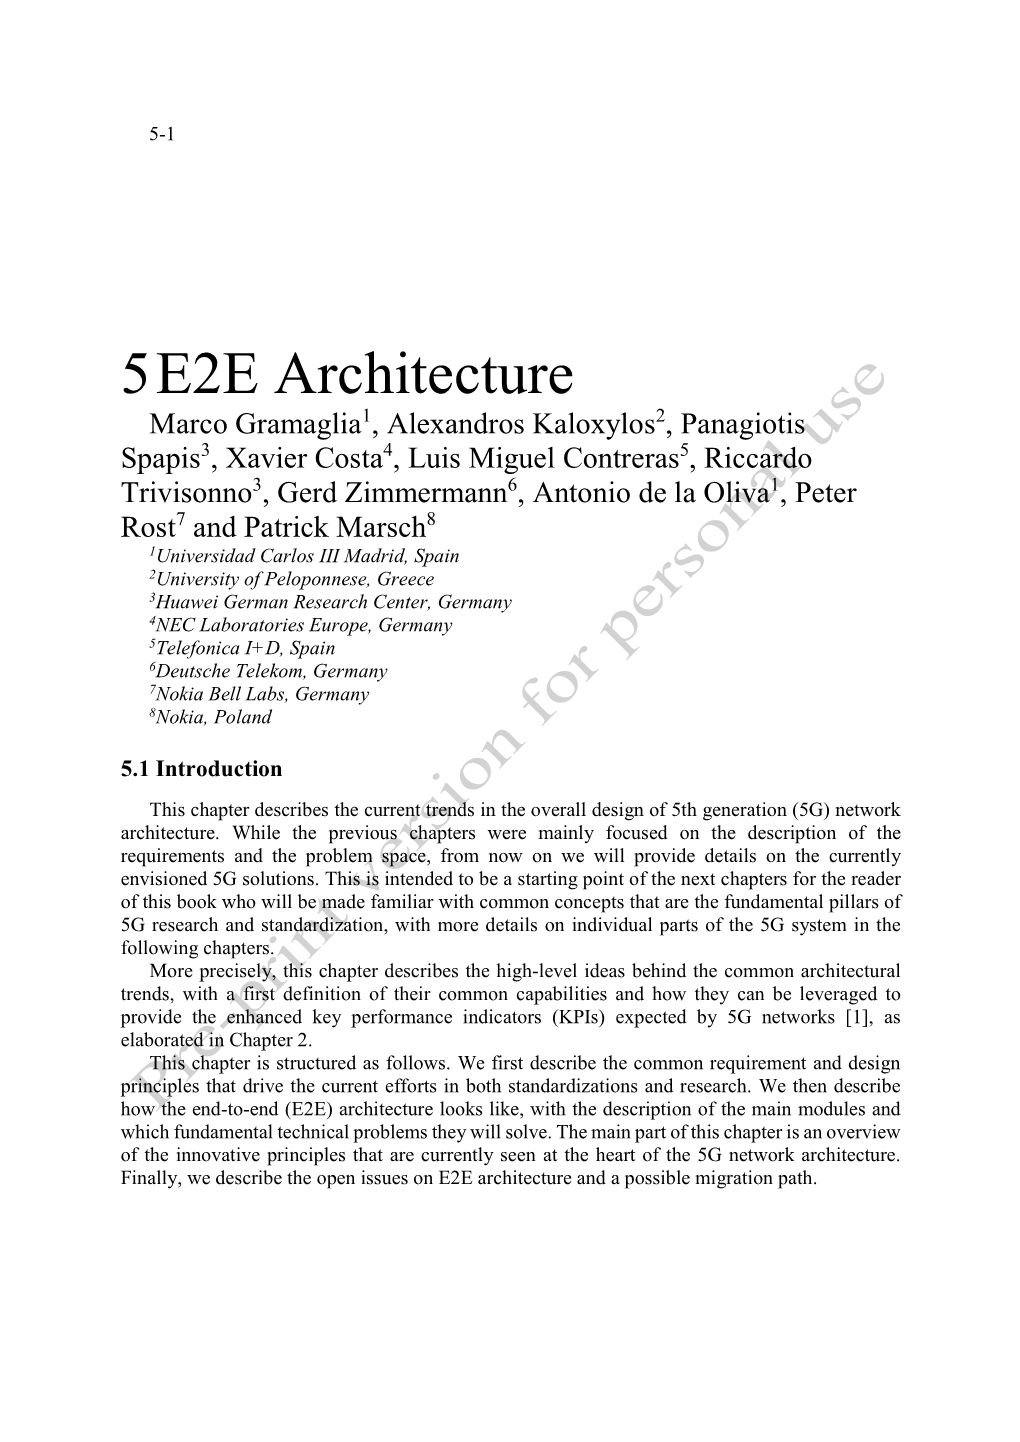 5 E2E Architecture